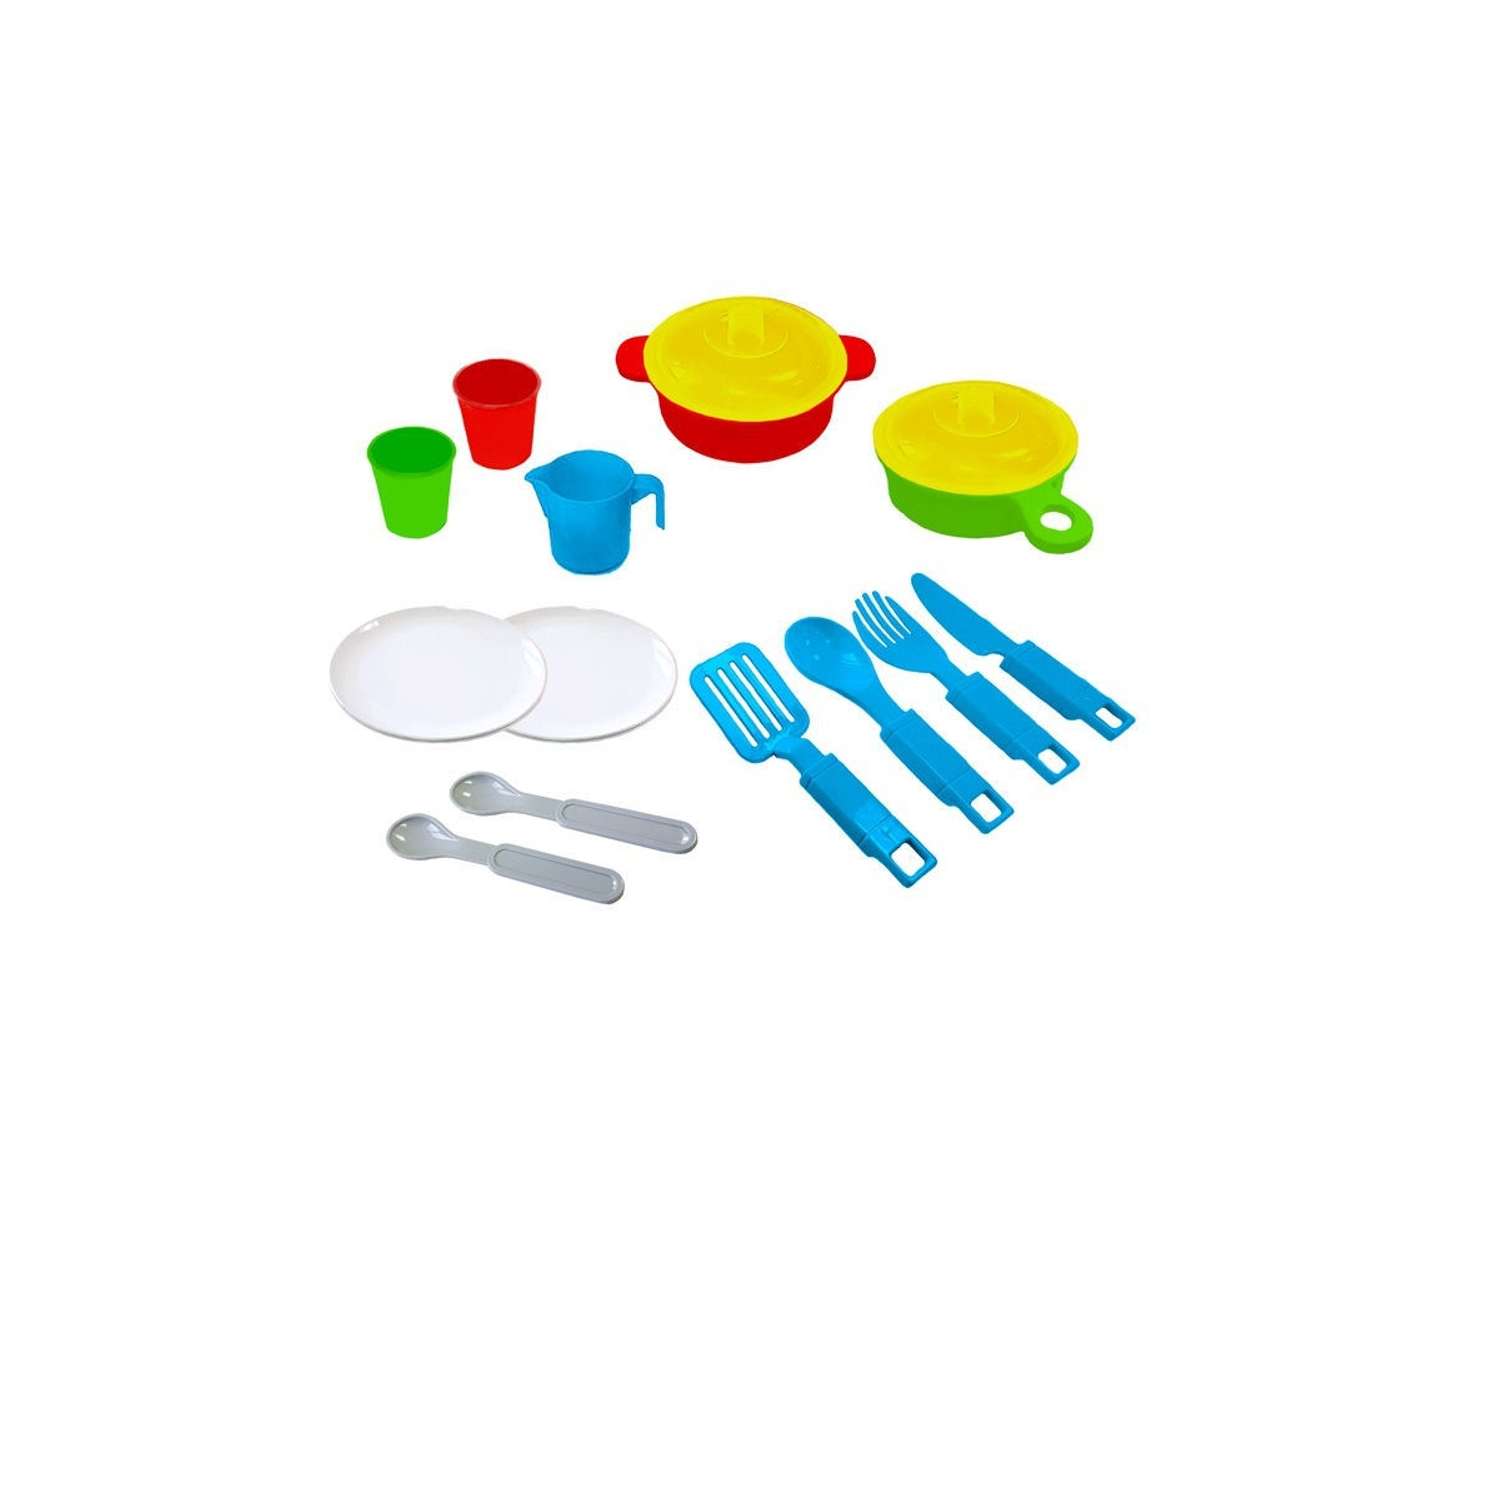 Игрушечная посуда детская Green Plast игровой набор для кухни 15 шт - фото 2